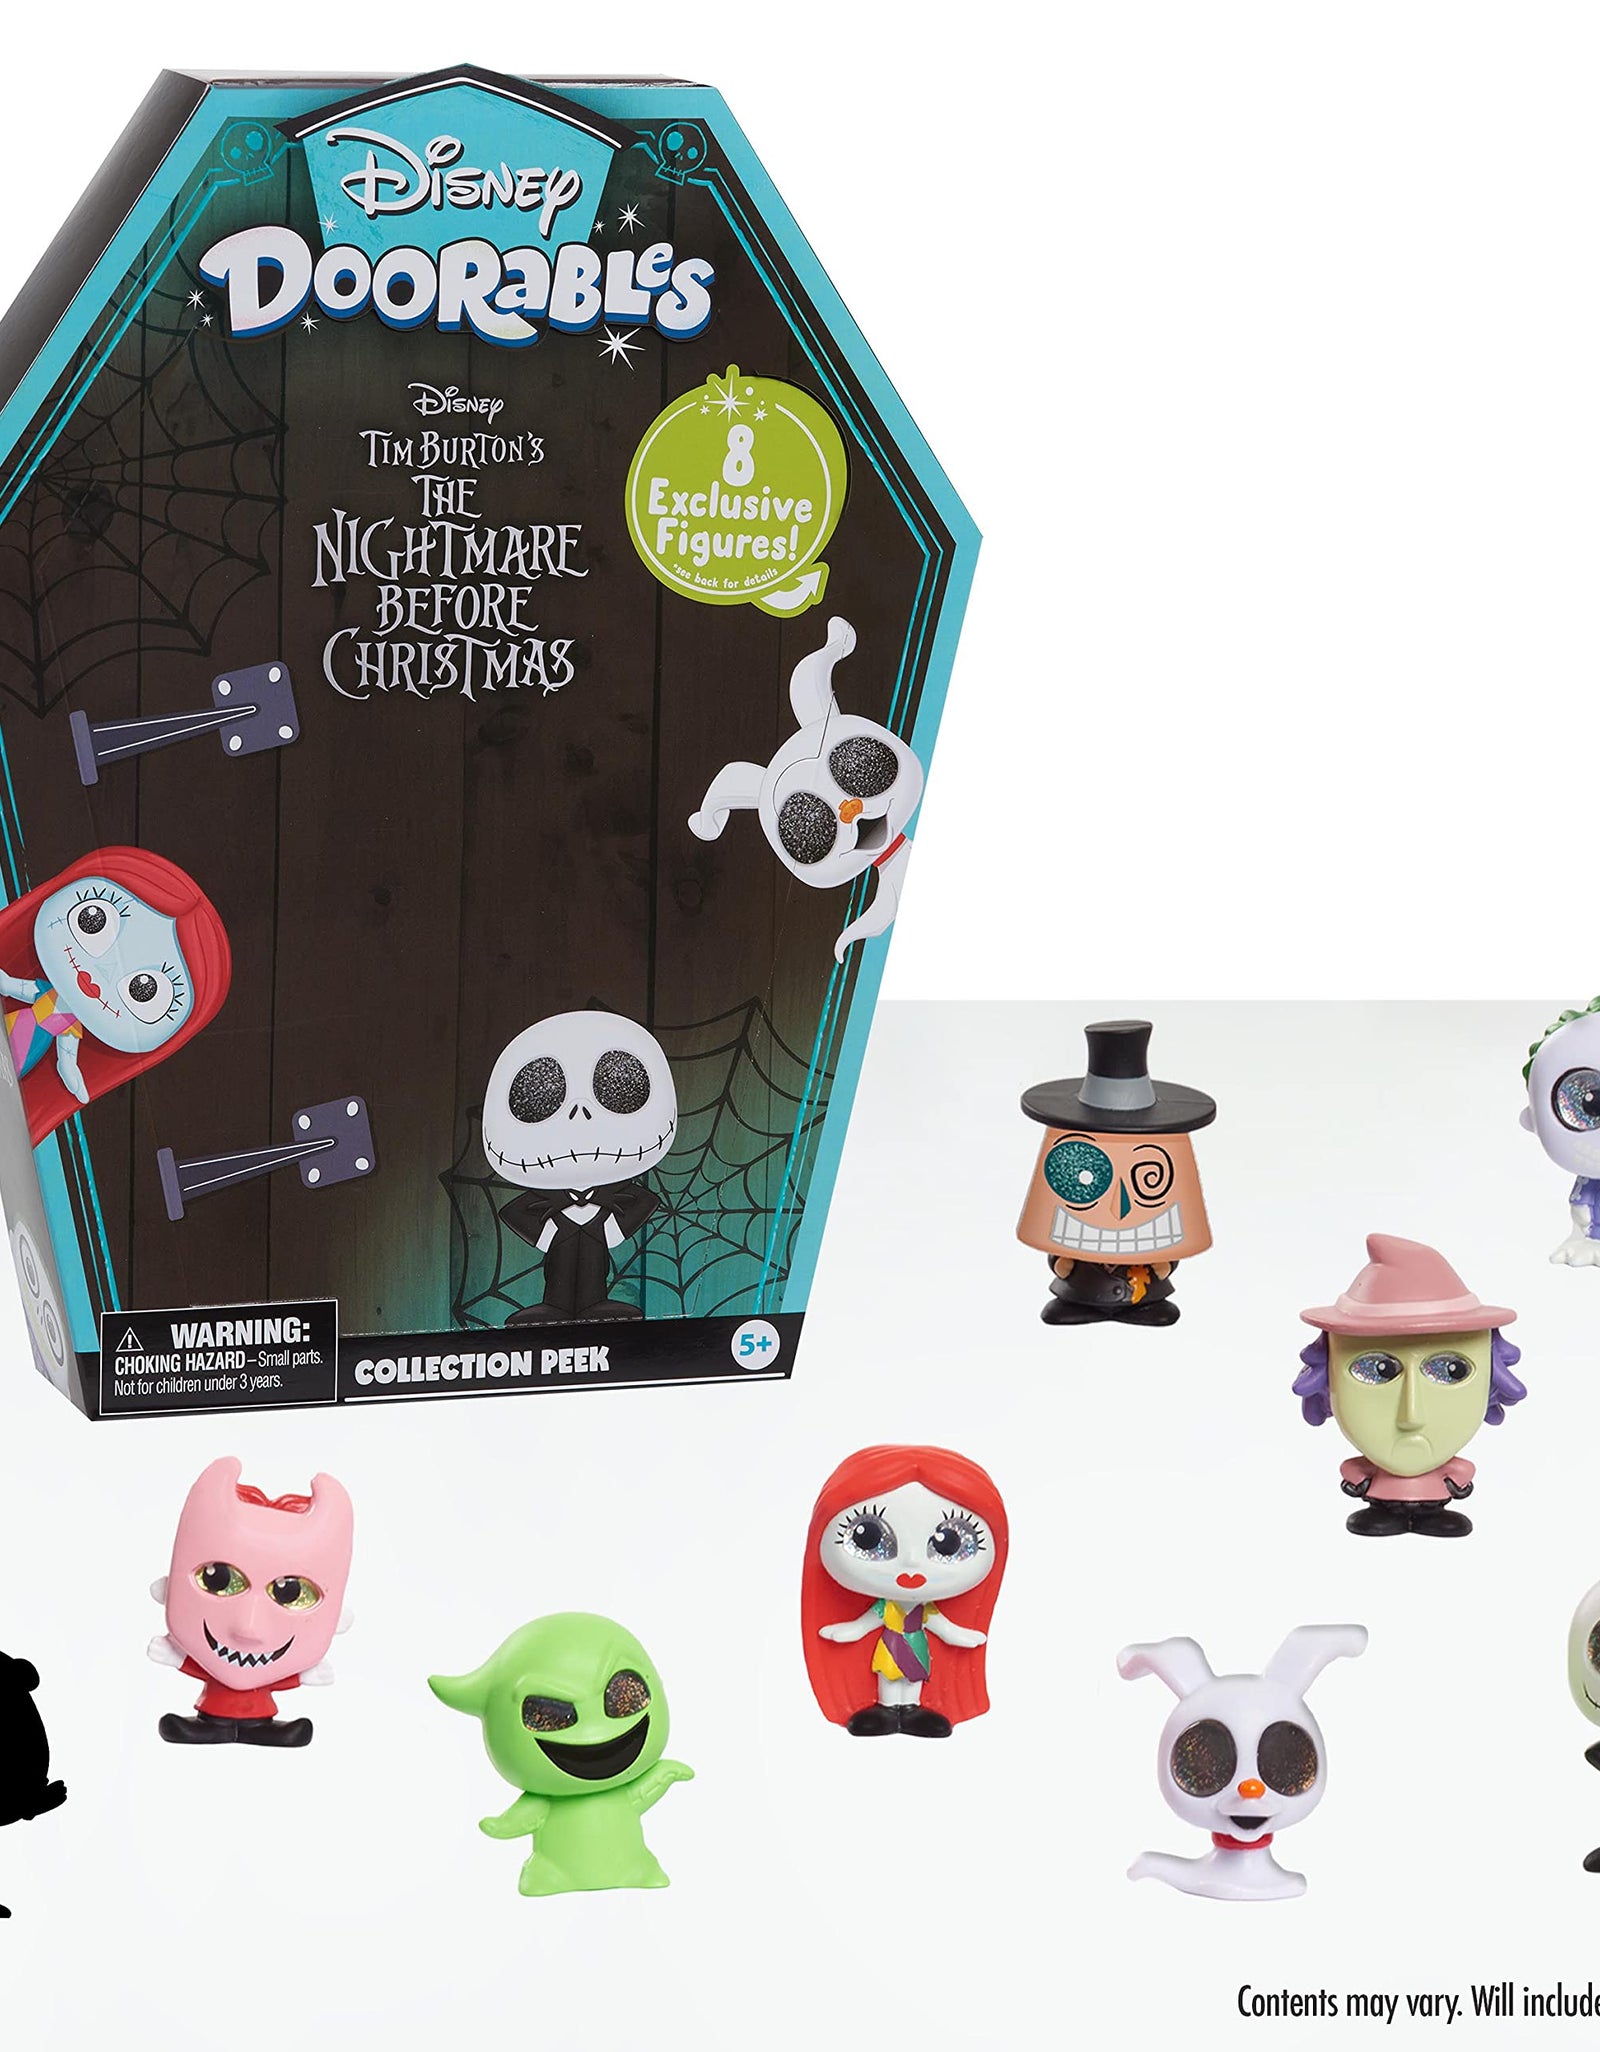 Disney Doorables NBC Collector Pack